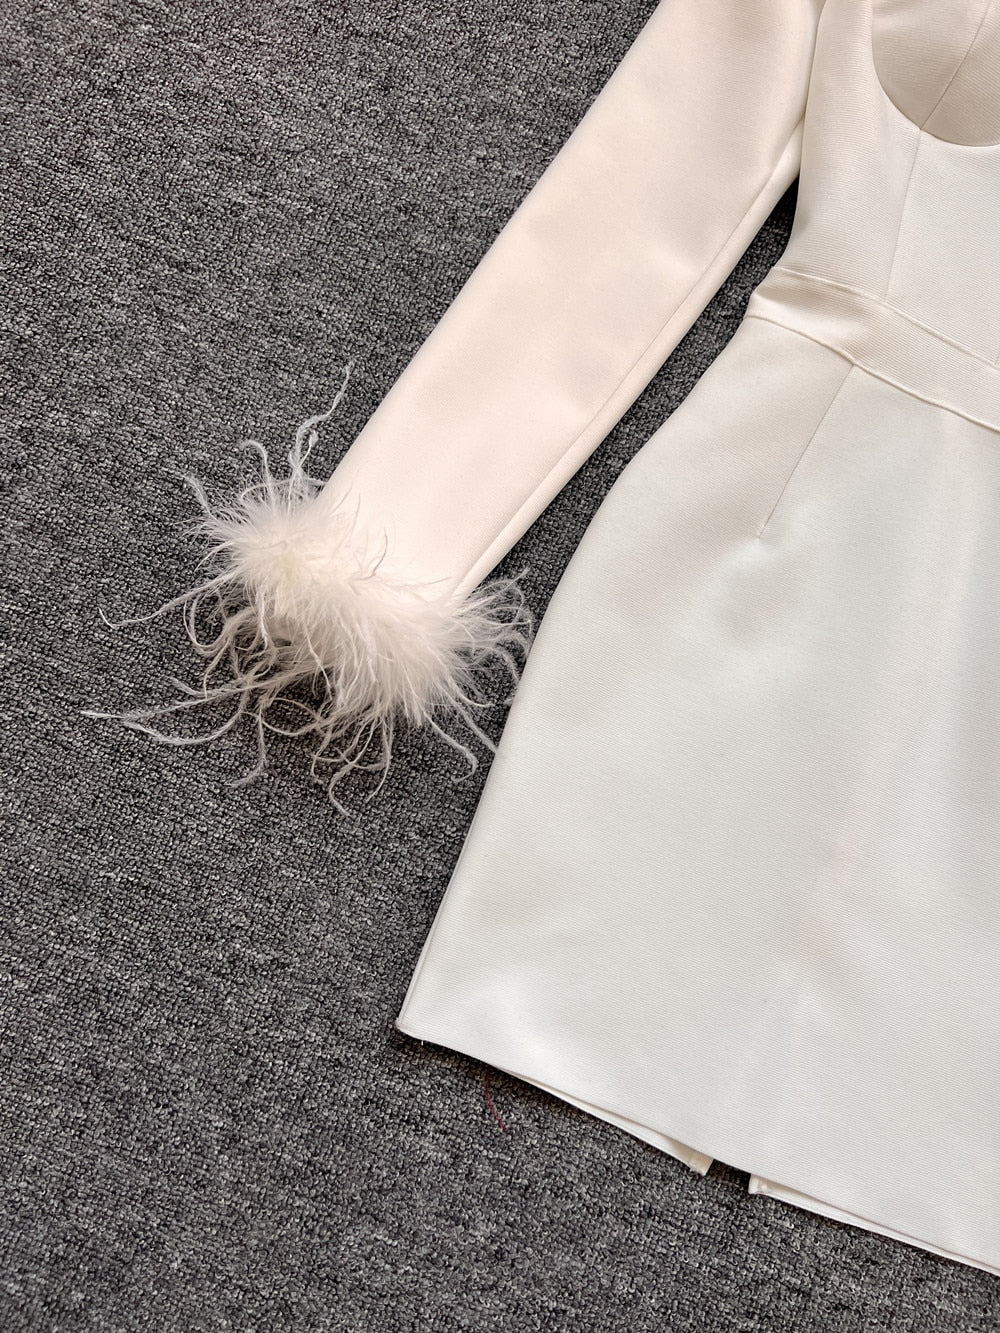 Savy Feathers Bandage Dress Fashion Closet Clothing